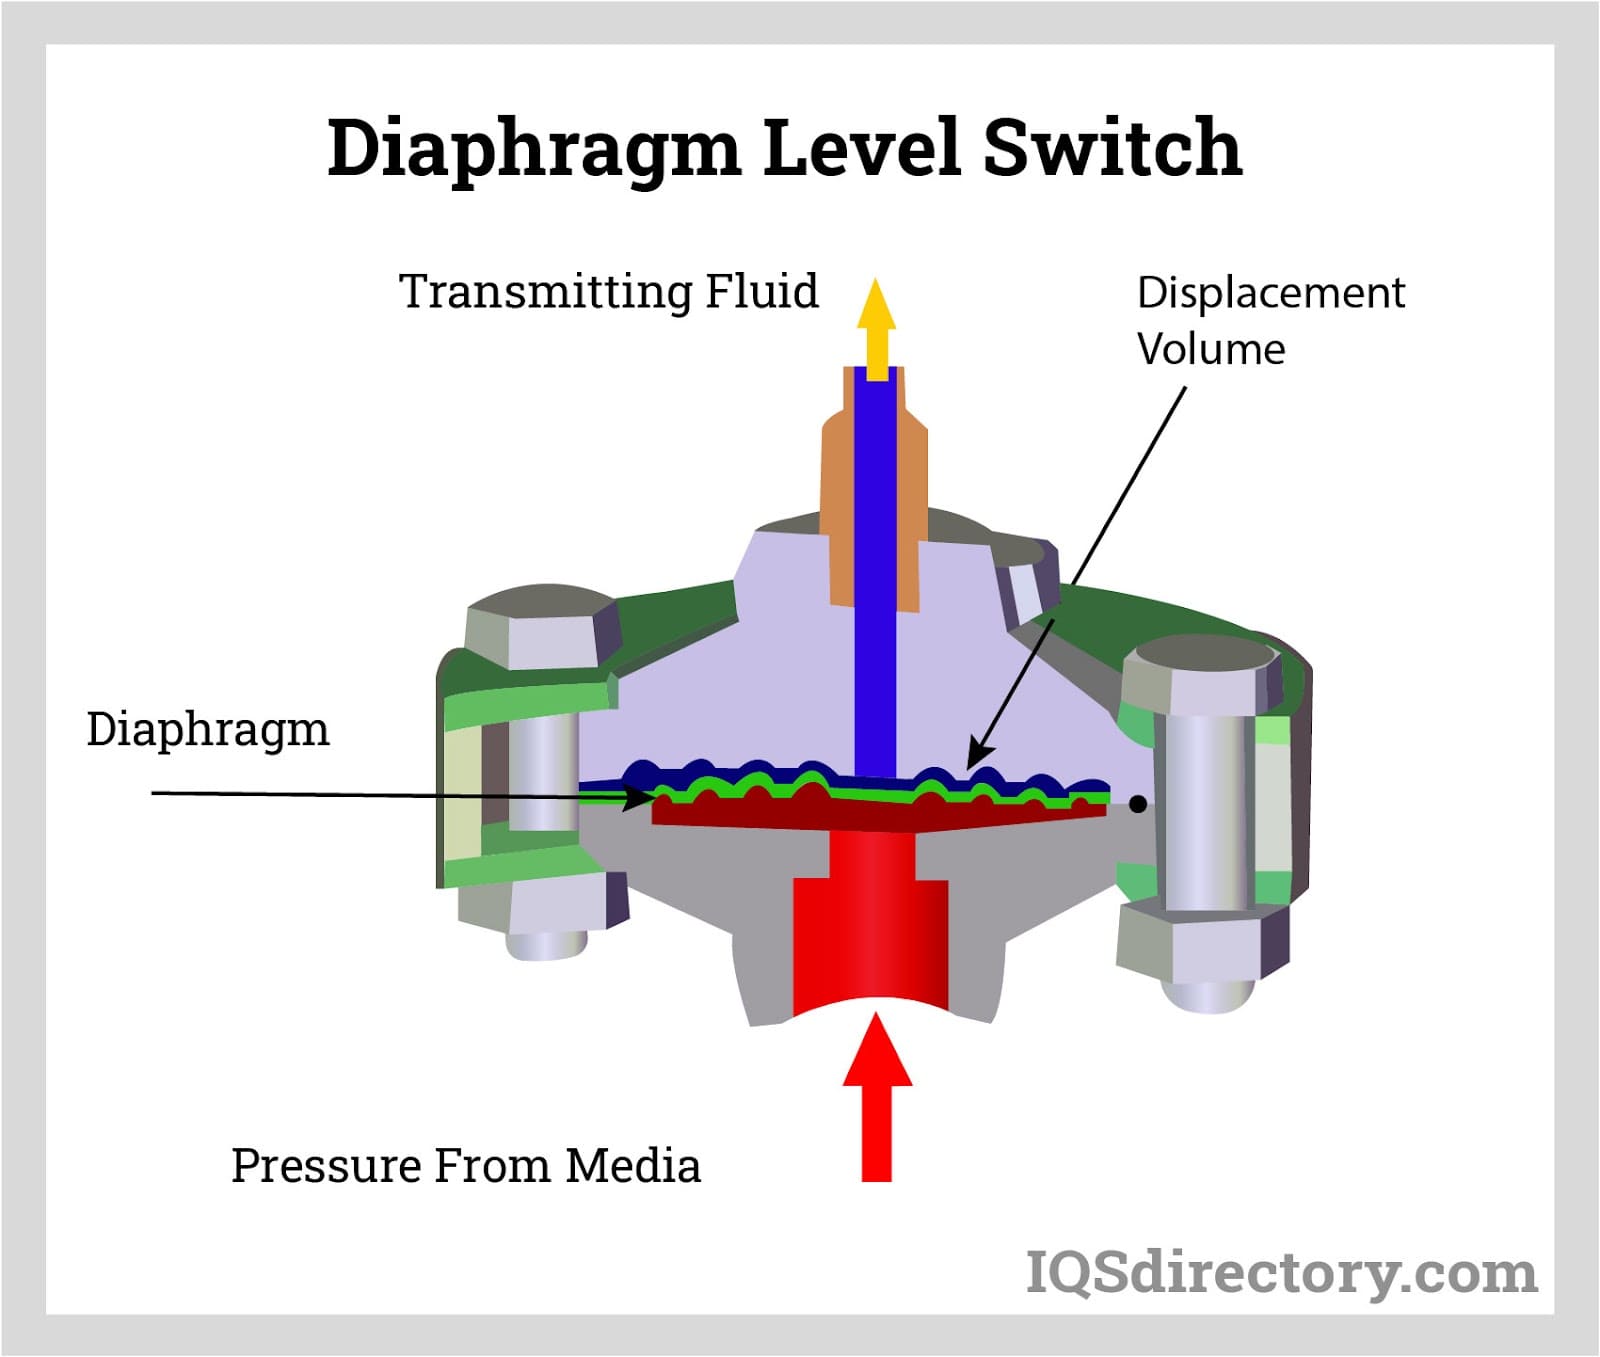 Diaphragm Level Switch